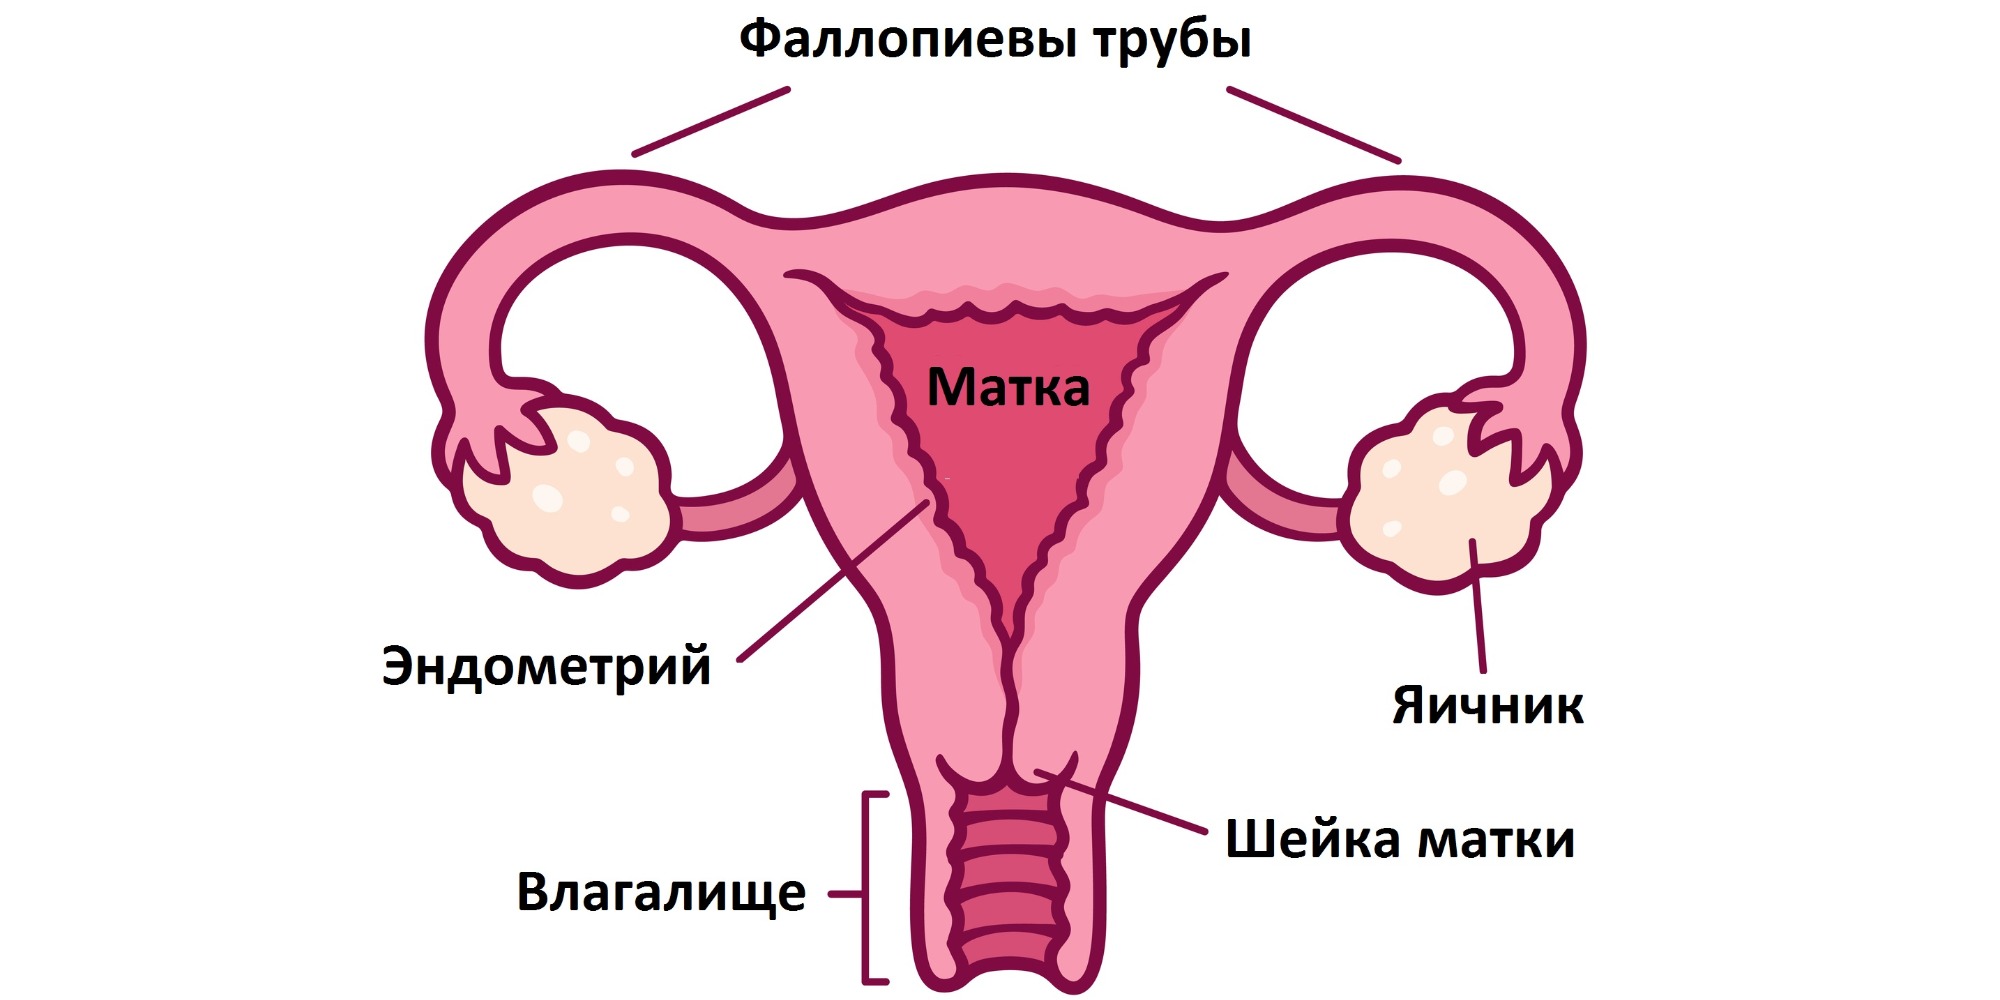 Матка женщины — это непарный мышечный орган, который находится в полости таза